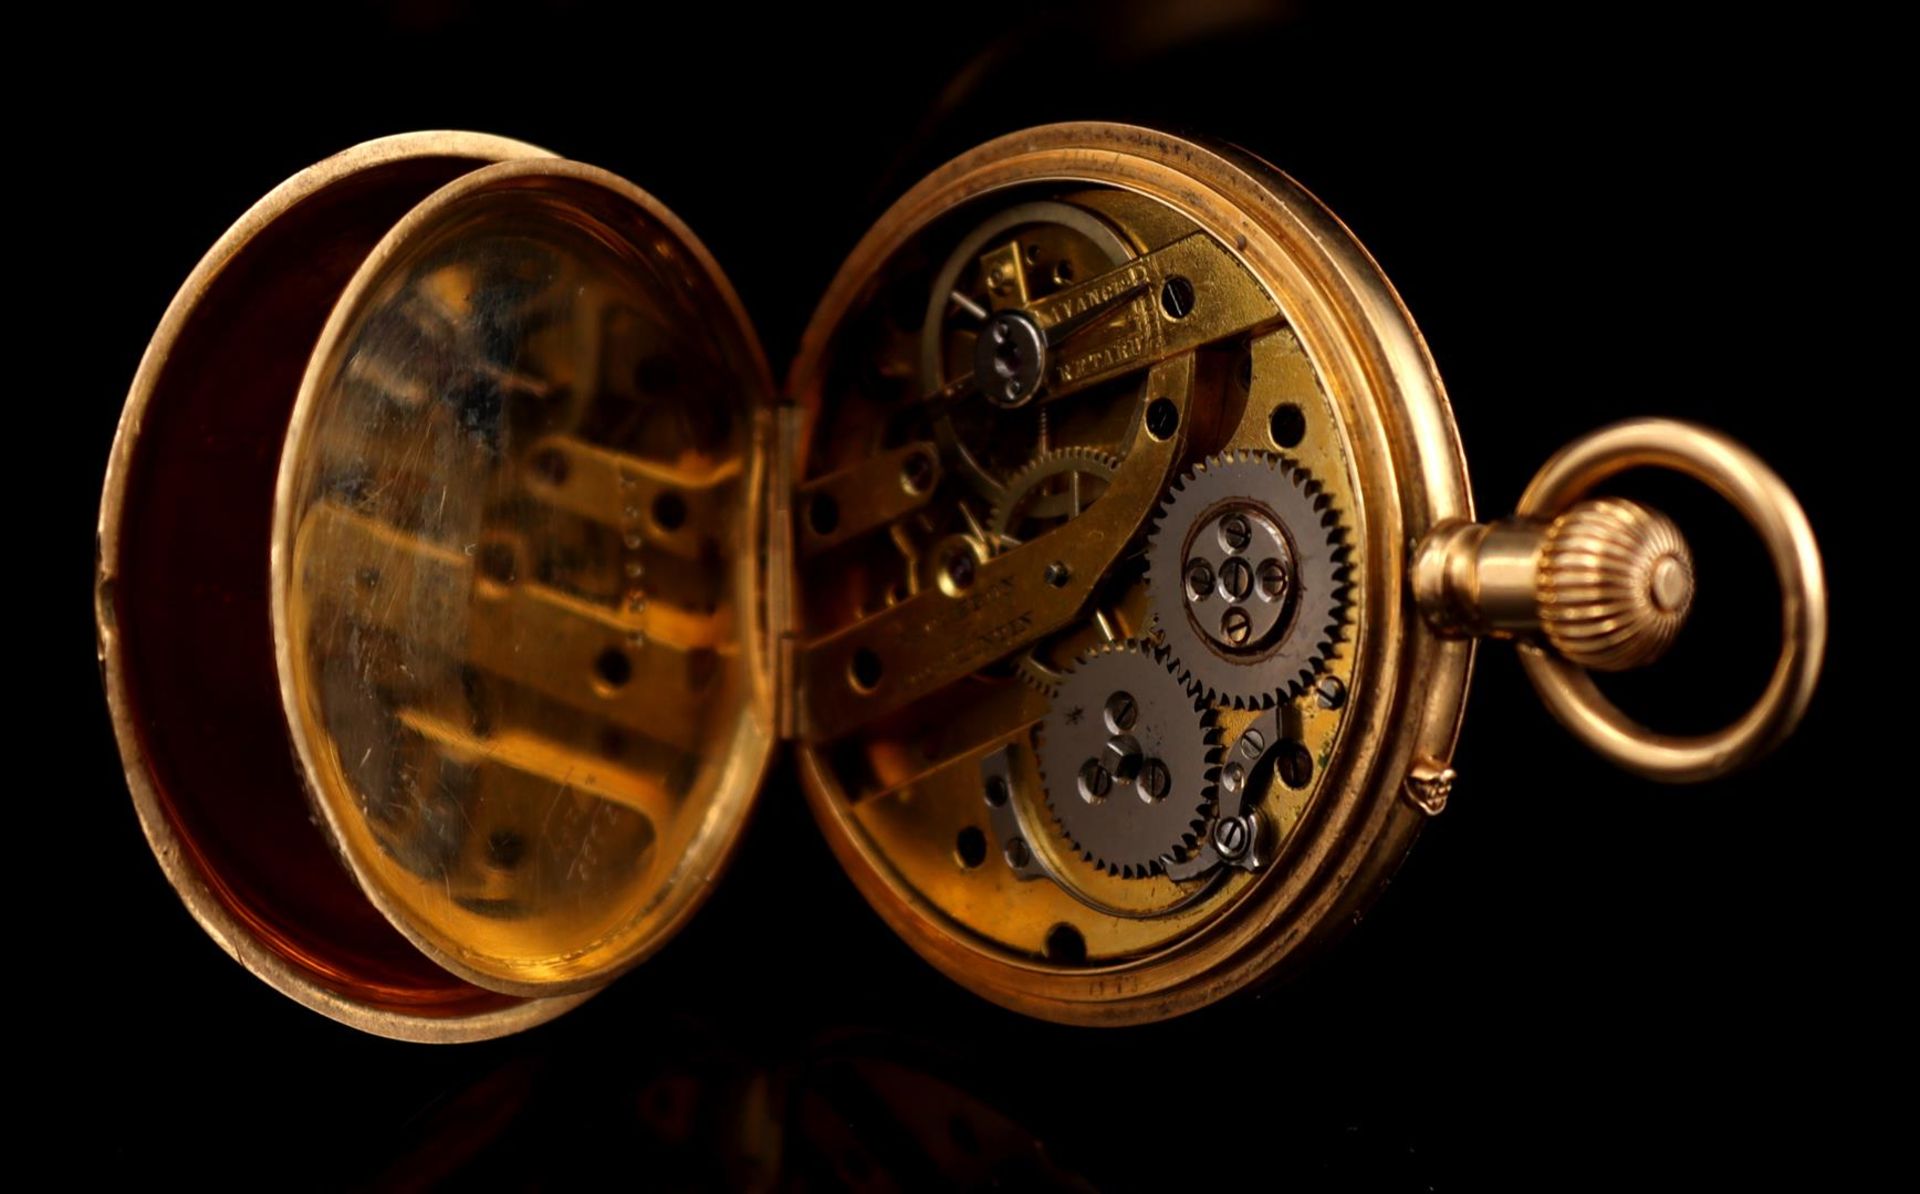 Vacheron & Constantin Genève pocket watch - Image 3 of 3